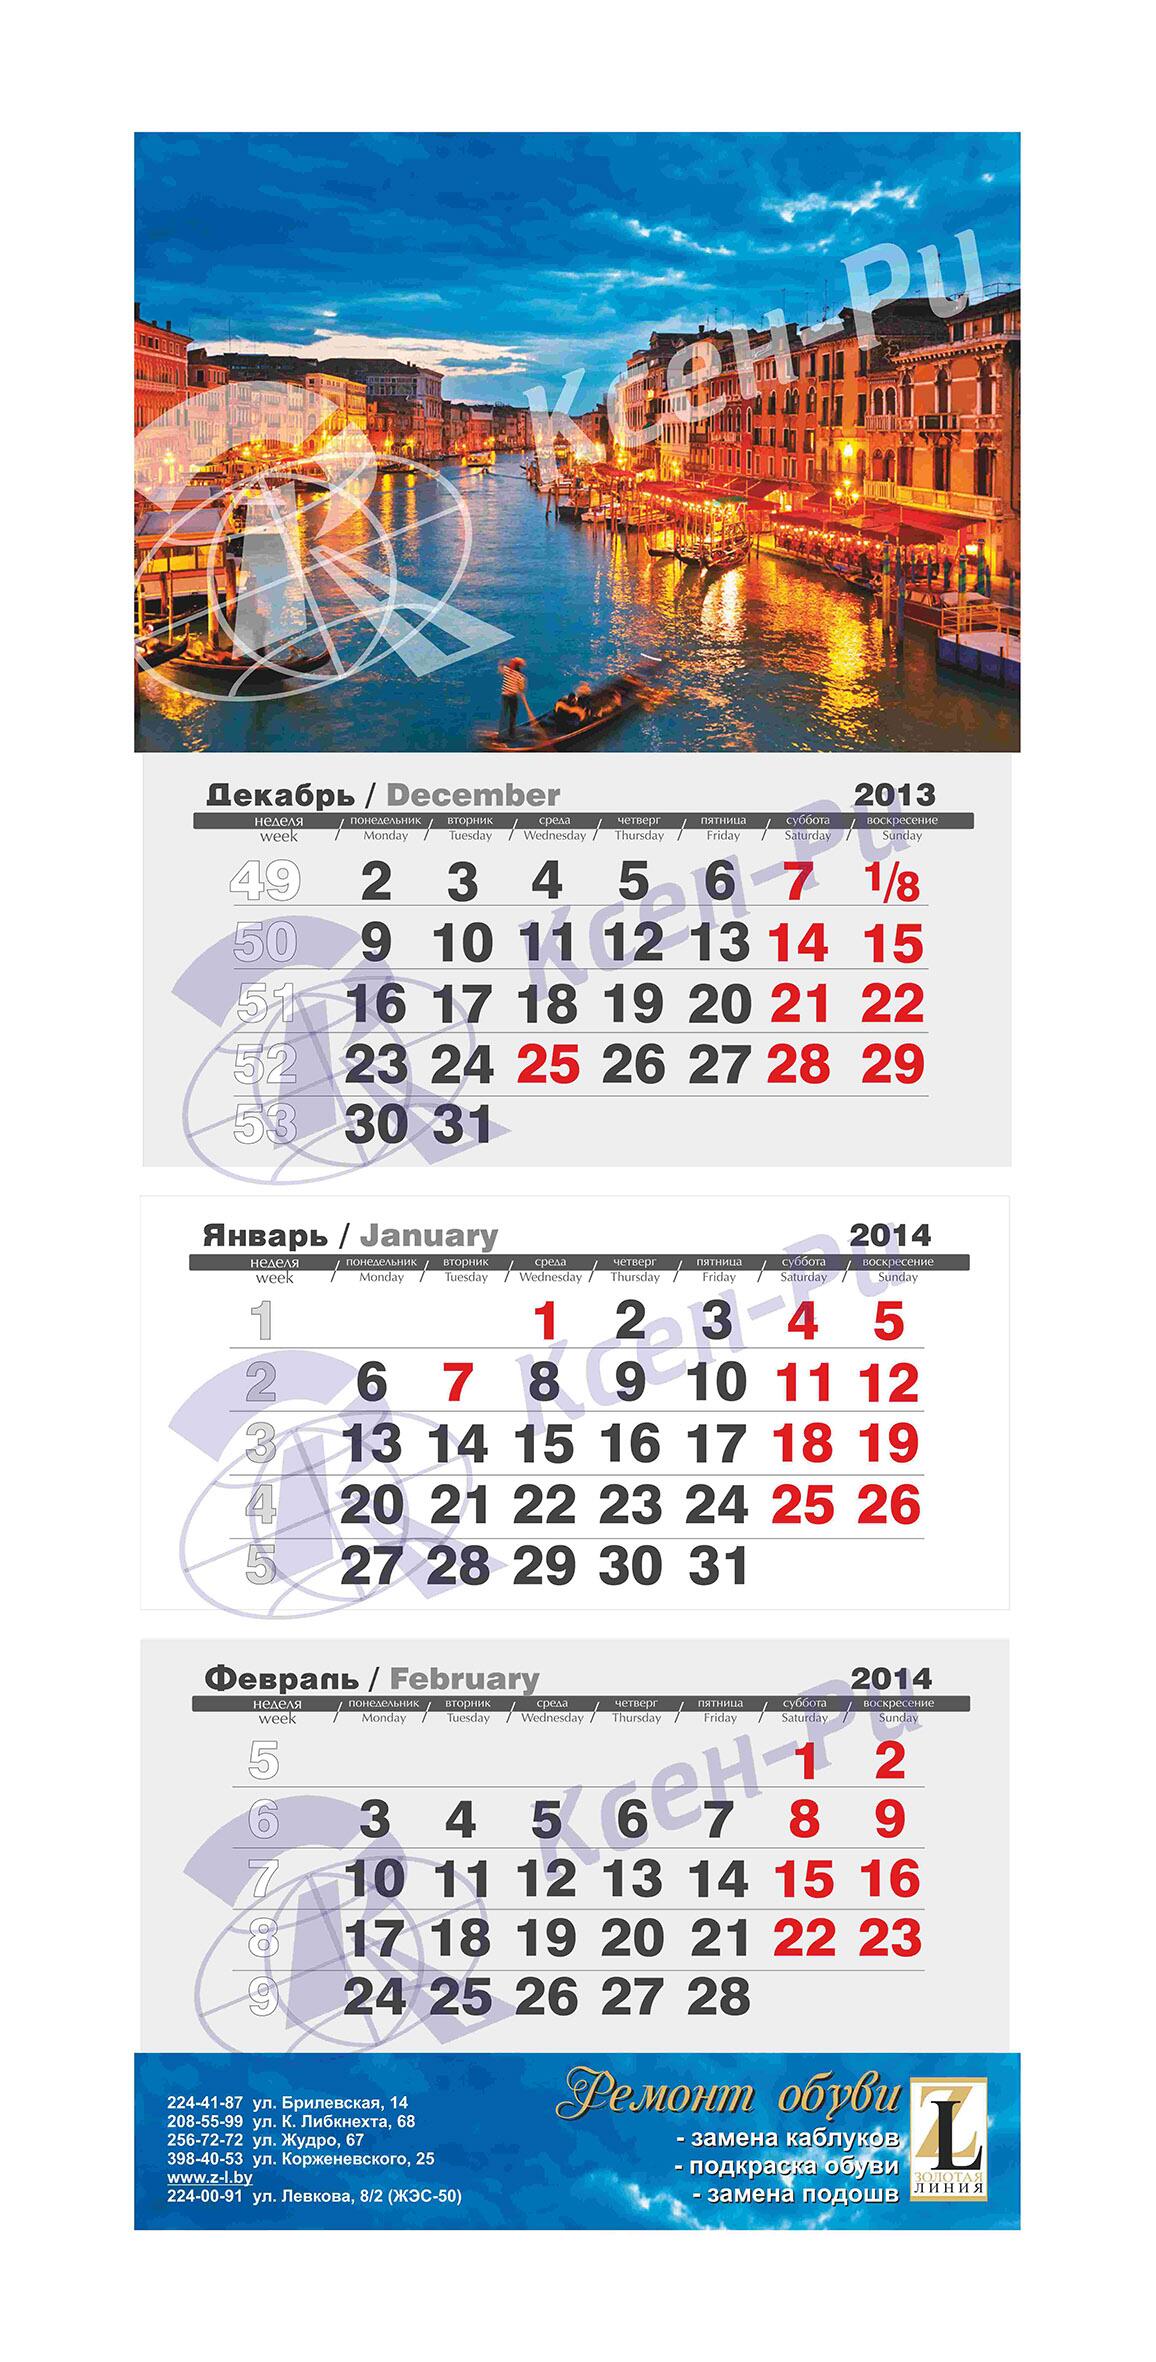 изготовление календаря на 2013 год